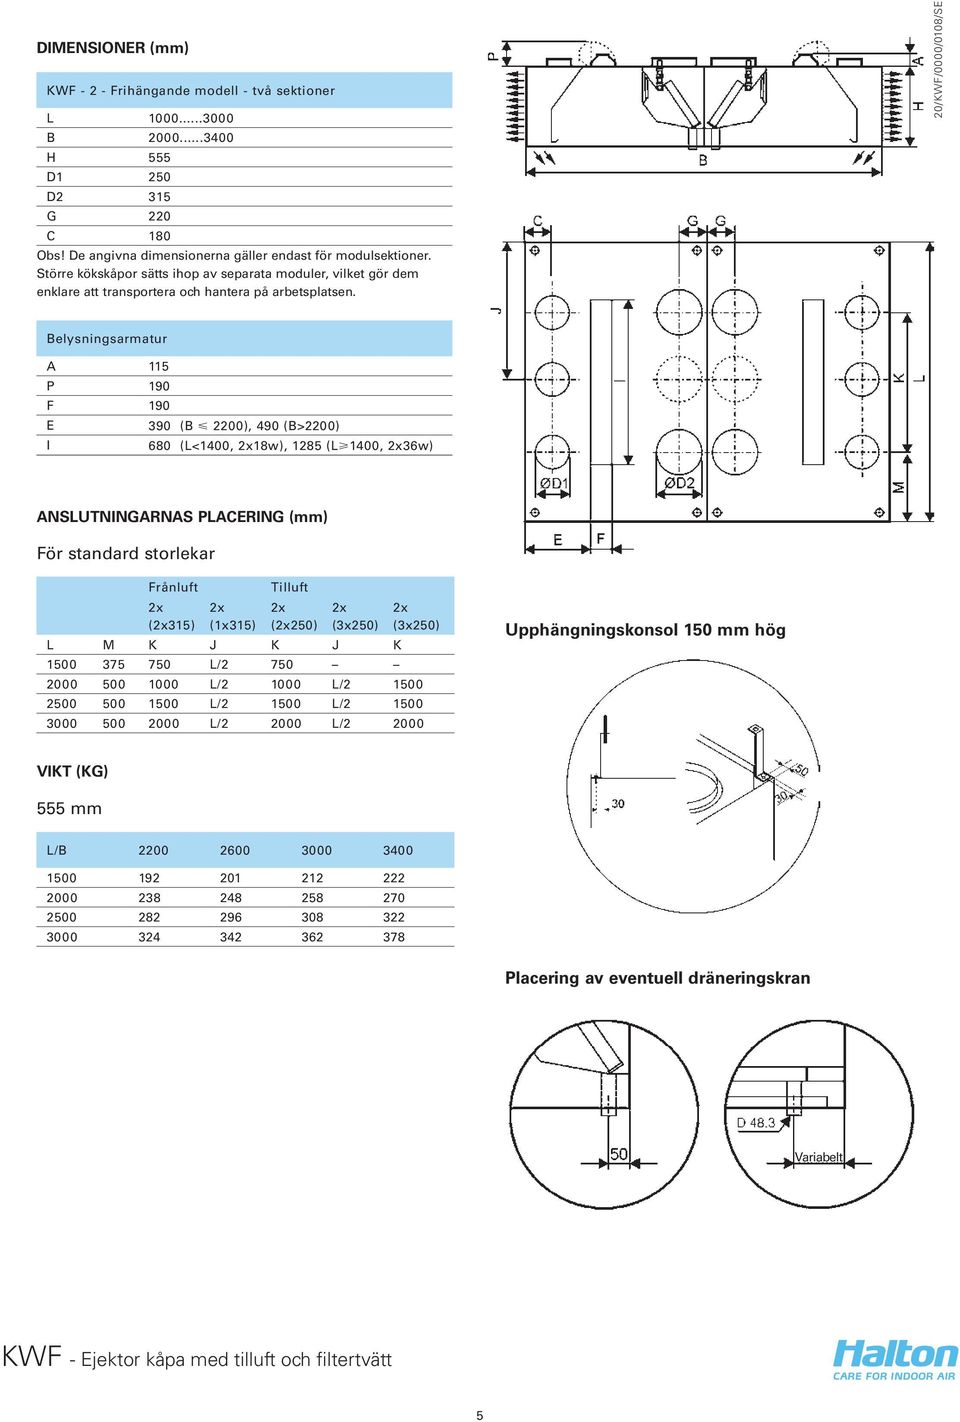 Belysningsarmatur A 115 P 190 F 190 E 390 (B < 2200), 490 (B>2200) I 680 (L<1400, 2x18w), 1285 (L>1400, 2x36w) ANSLUTNINGARNAS PLACERING (mm) För standard storlekar Frånluft Tilluft 2x (2x315) 2x